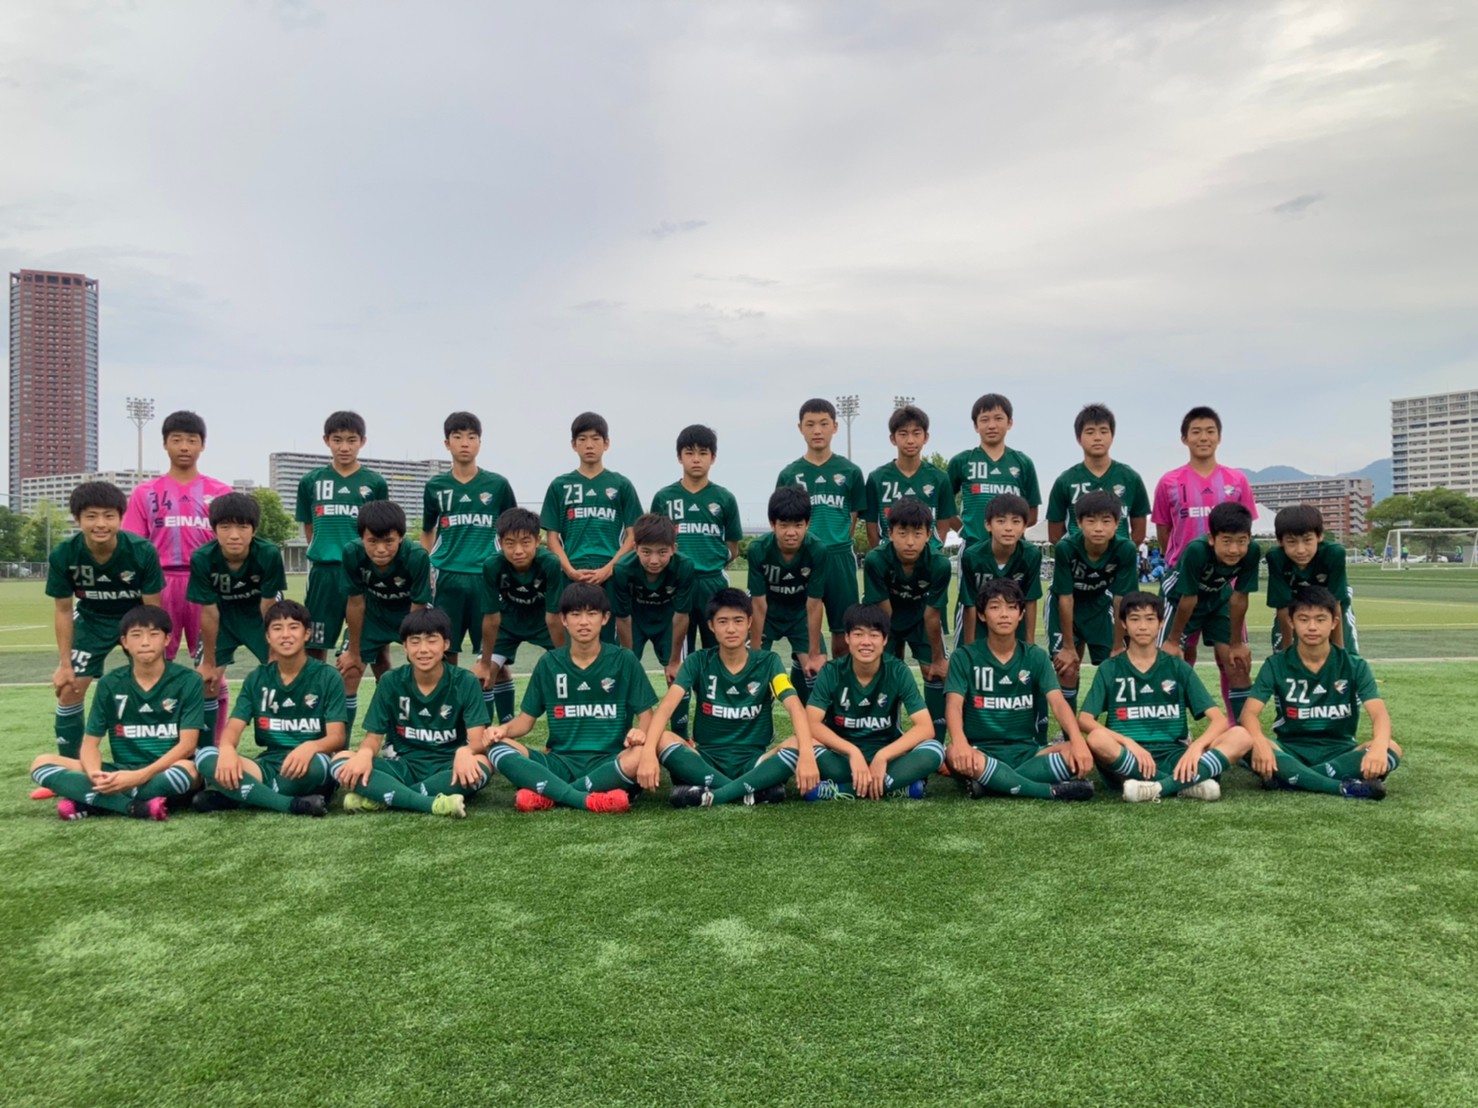 U 15 クラブユース選手権九州大会出場決定 西南フットボールクラブ